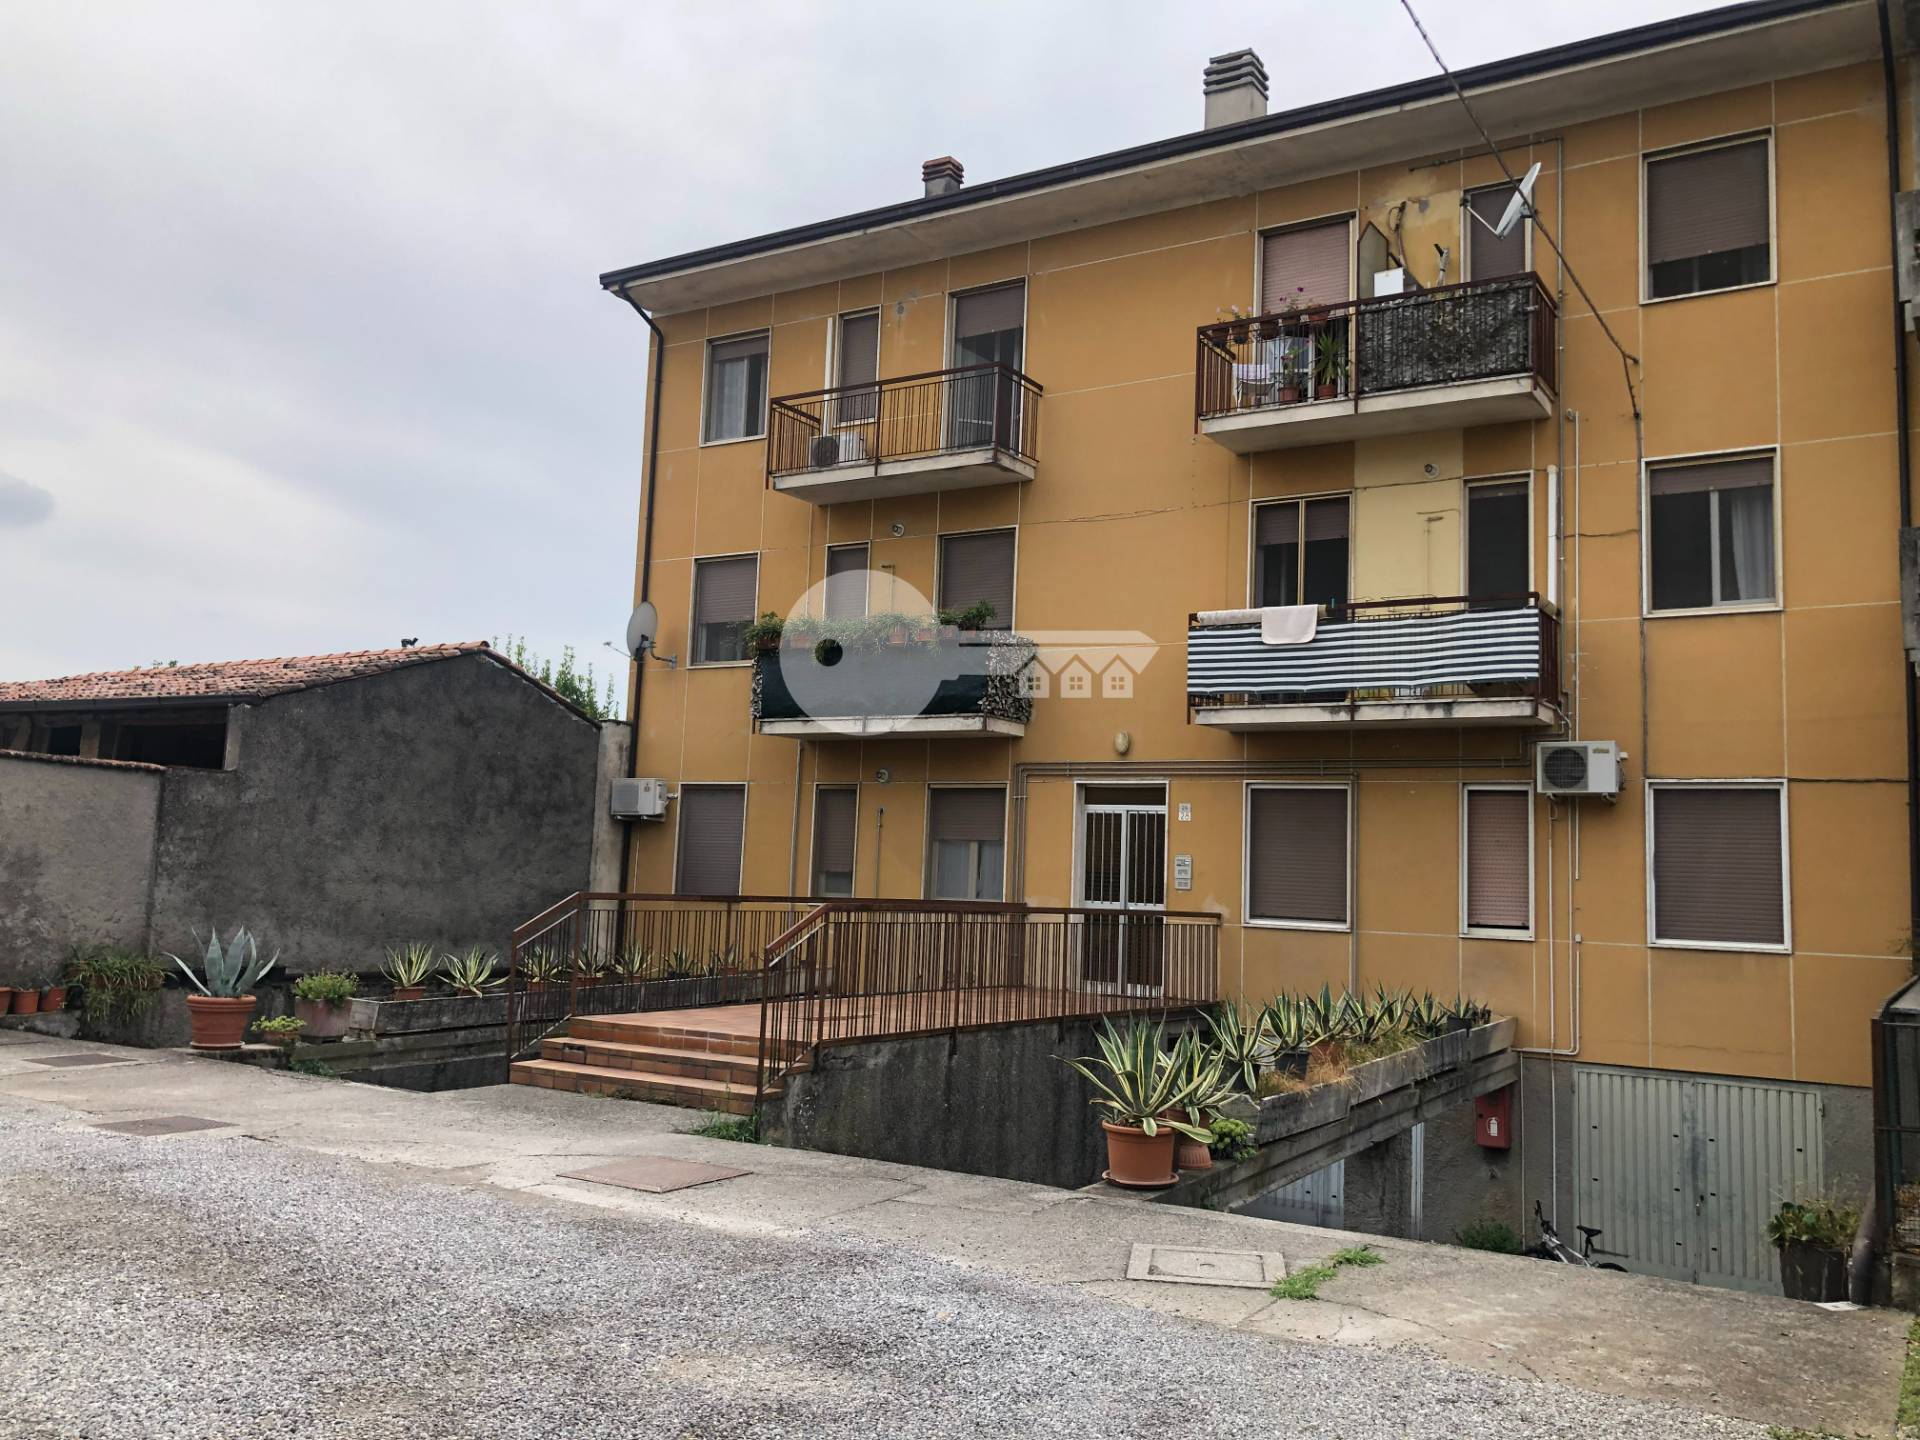 Appartamento in vendita a Pralboino, 4 locali, prezzo € 70.000 | PortaleAgenzieImmobiliari.it